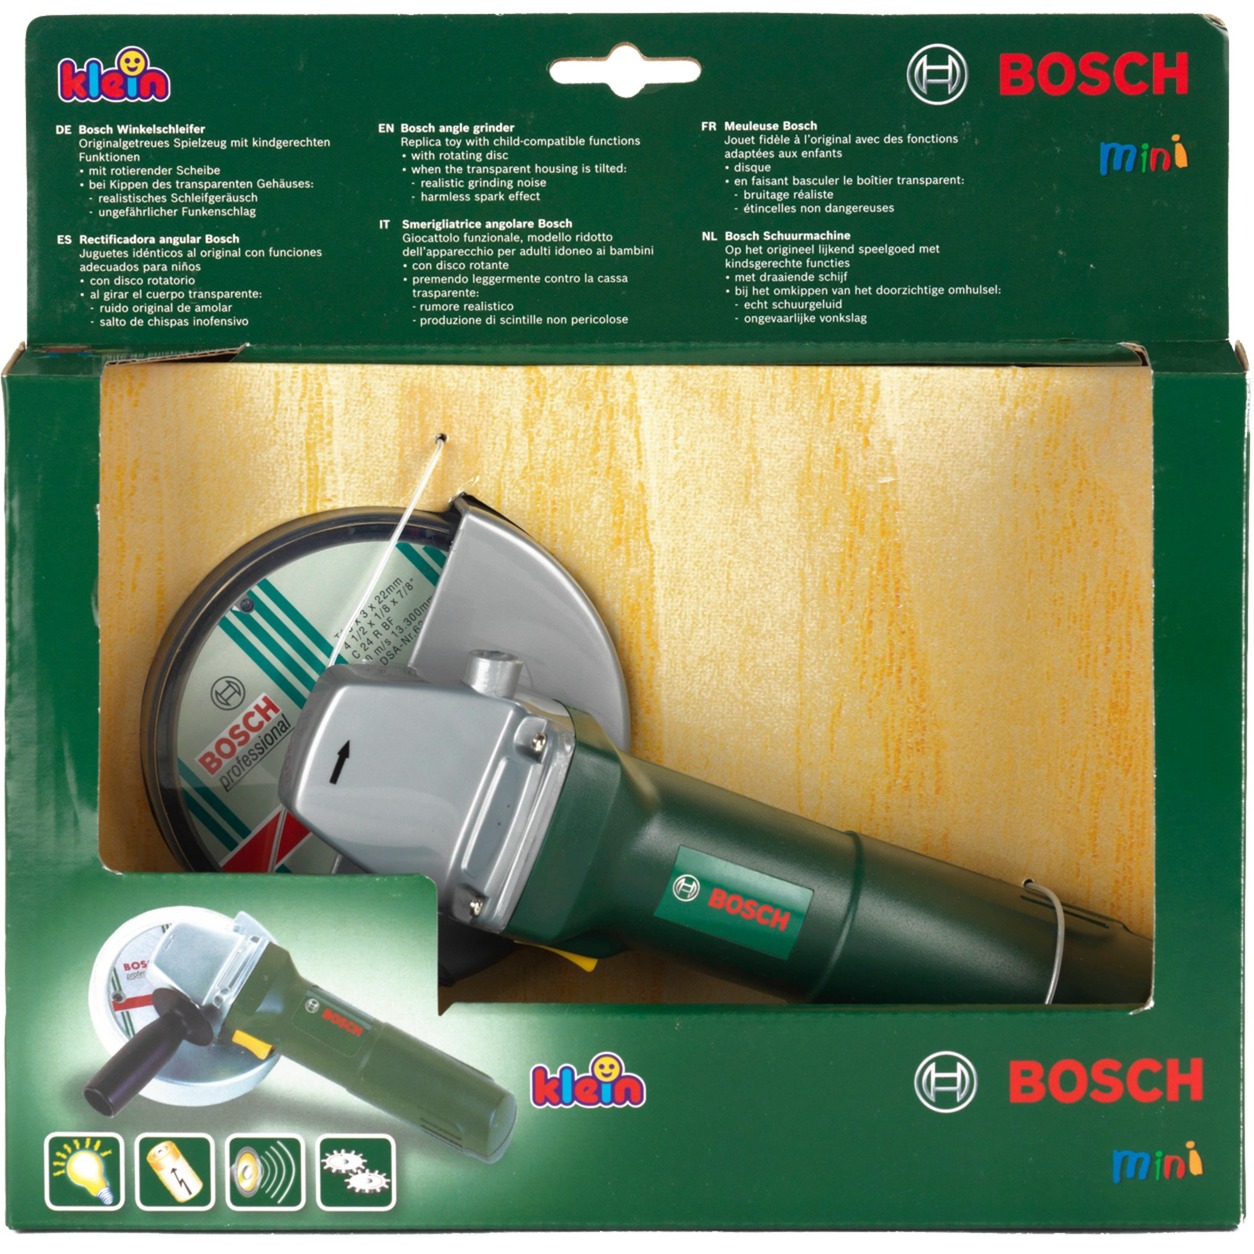 Image of Alternate - Bosch Winkelschleifer, Kinderwerkzeug online einkaufen bei Alternate